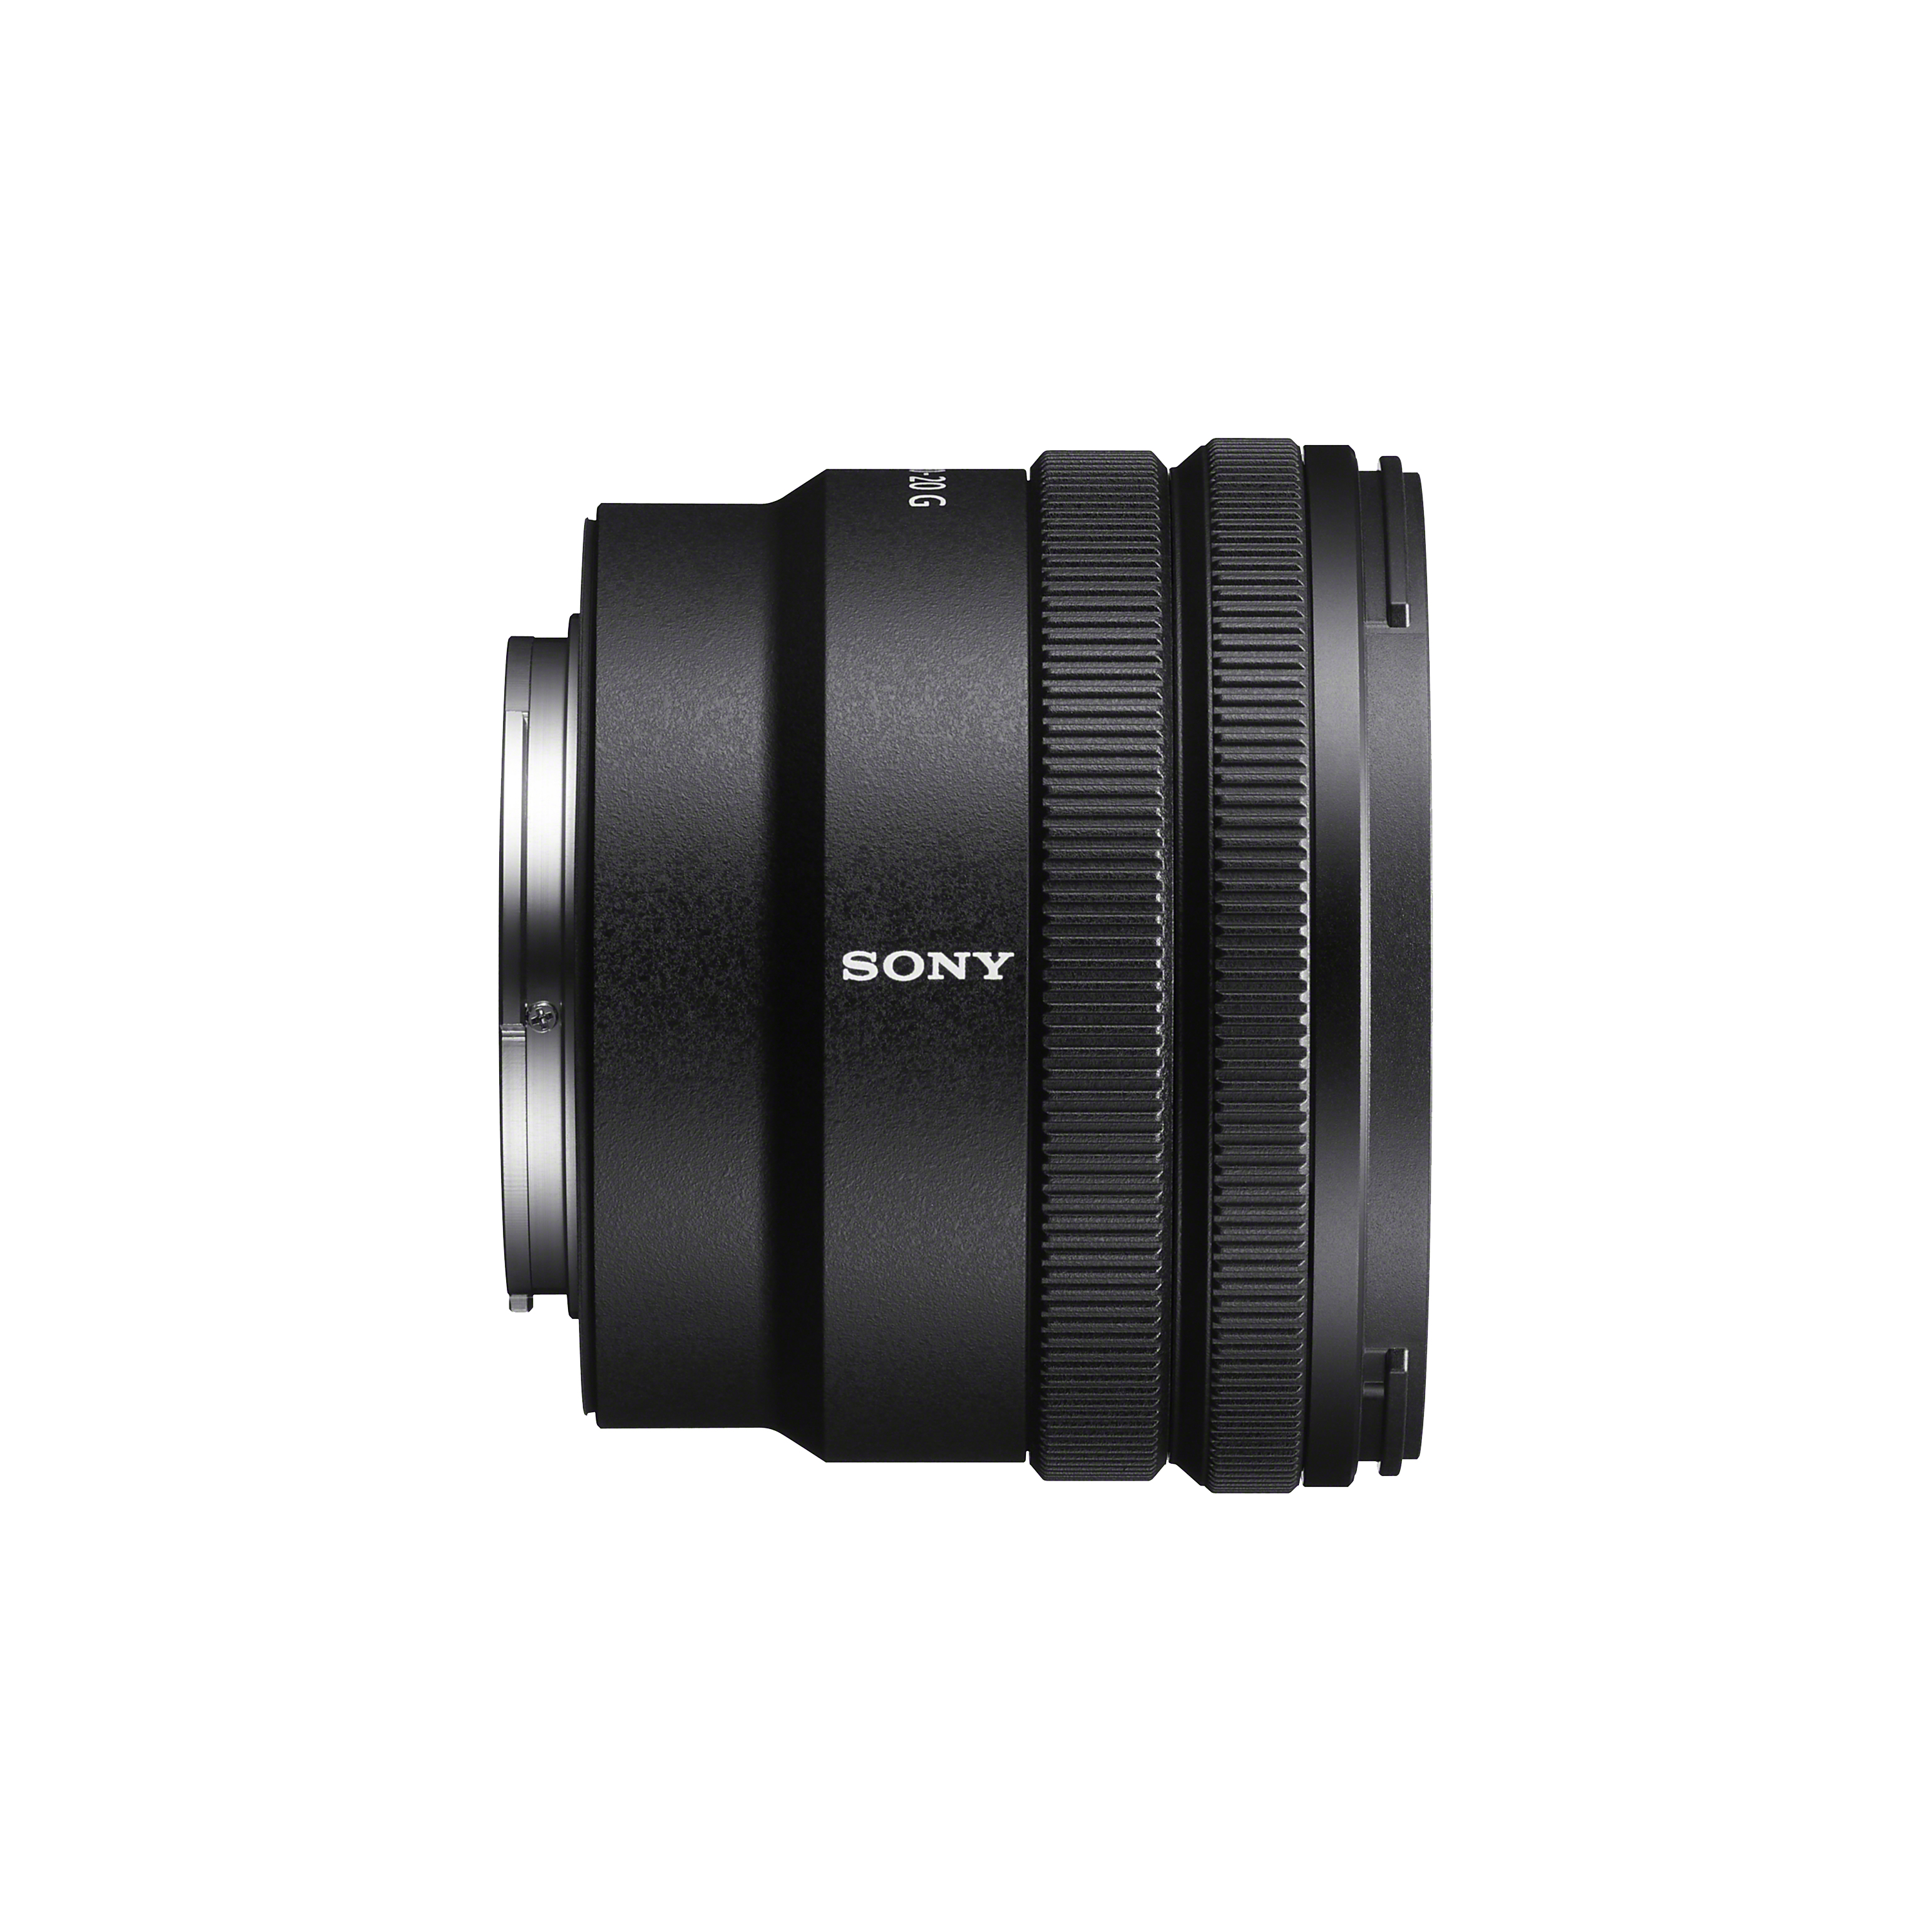 SELP1020G - E PZ 10-20 mm F4 G (E 接環專屬鏡頭) - Sony 台灣官方